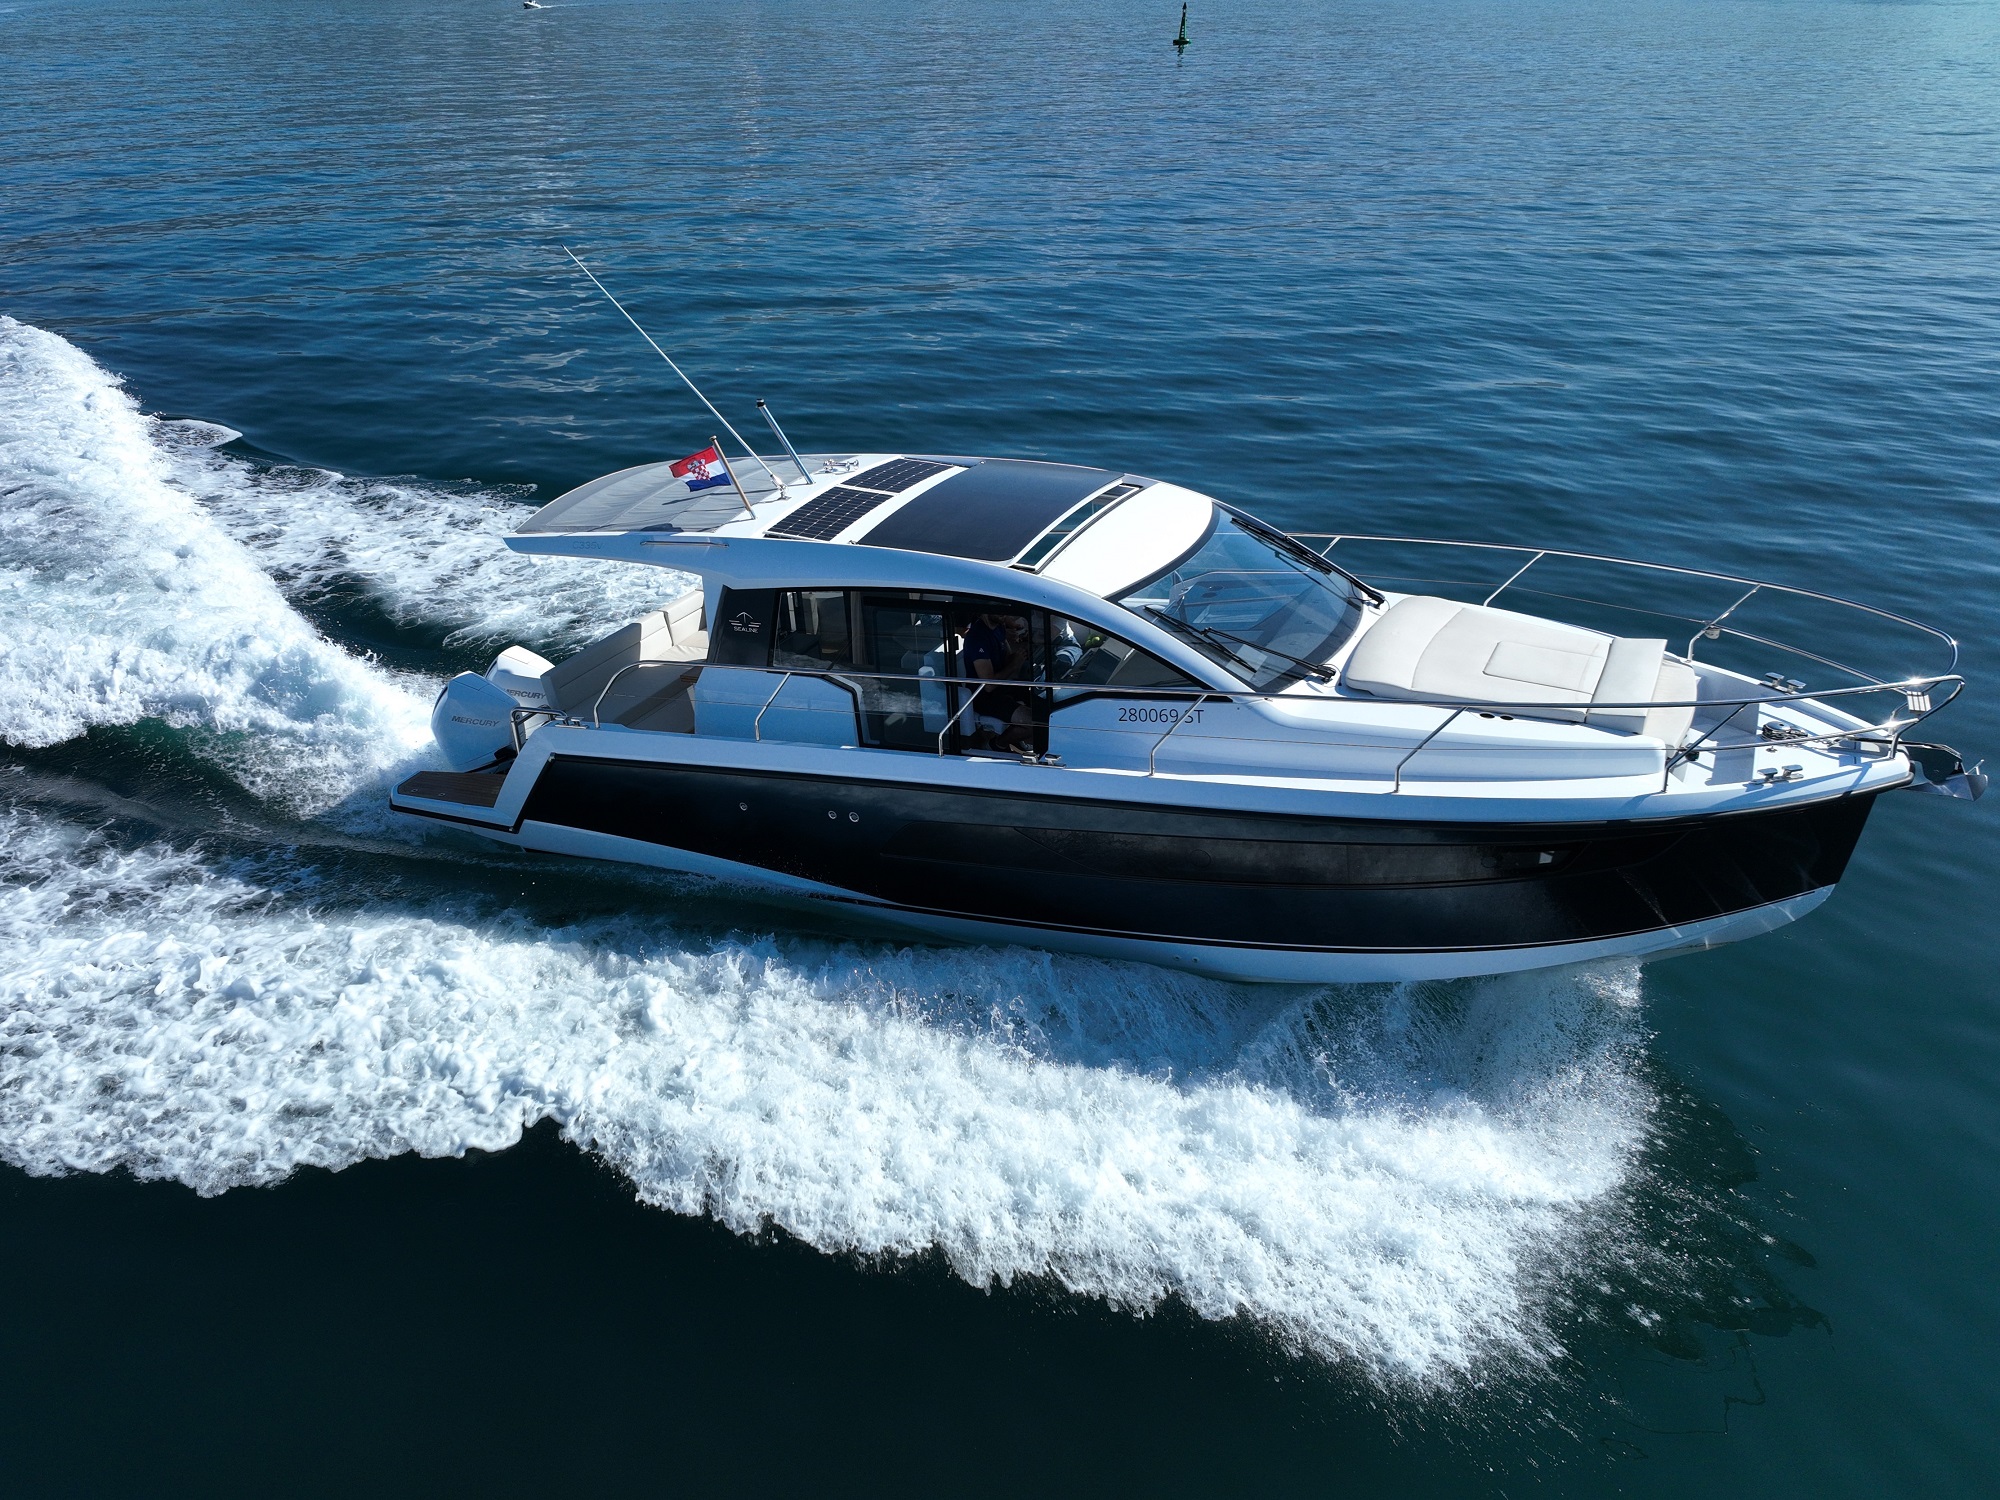 Motorni čoln Sealine C335V Split regija, Hrvaška 3 thumbnail